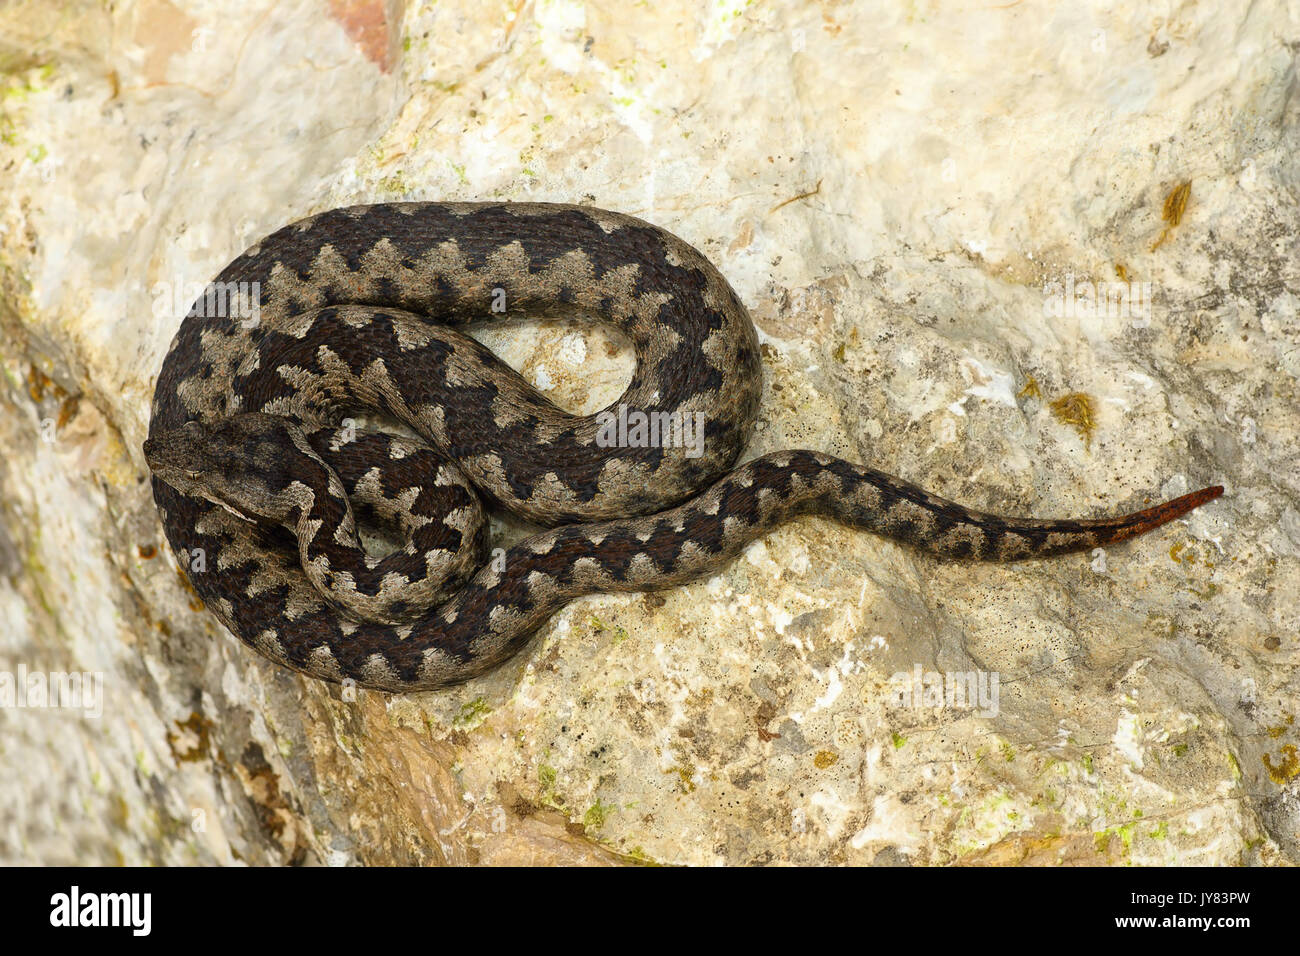 Giftige europäischen Schlange auf Stein (Vipera ammodytes oder die Nase viper Gehörnten, der gefährlichste Reptil aus Europa) Stockfoto